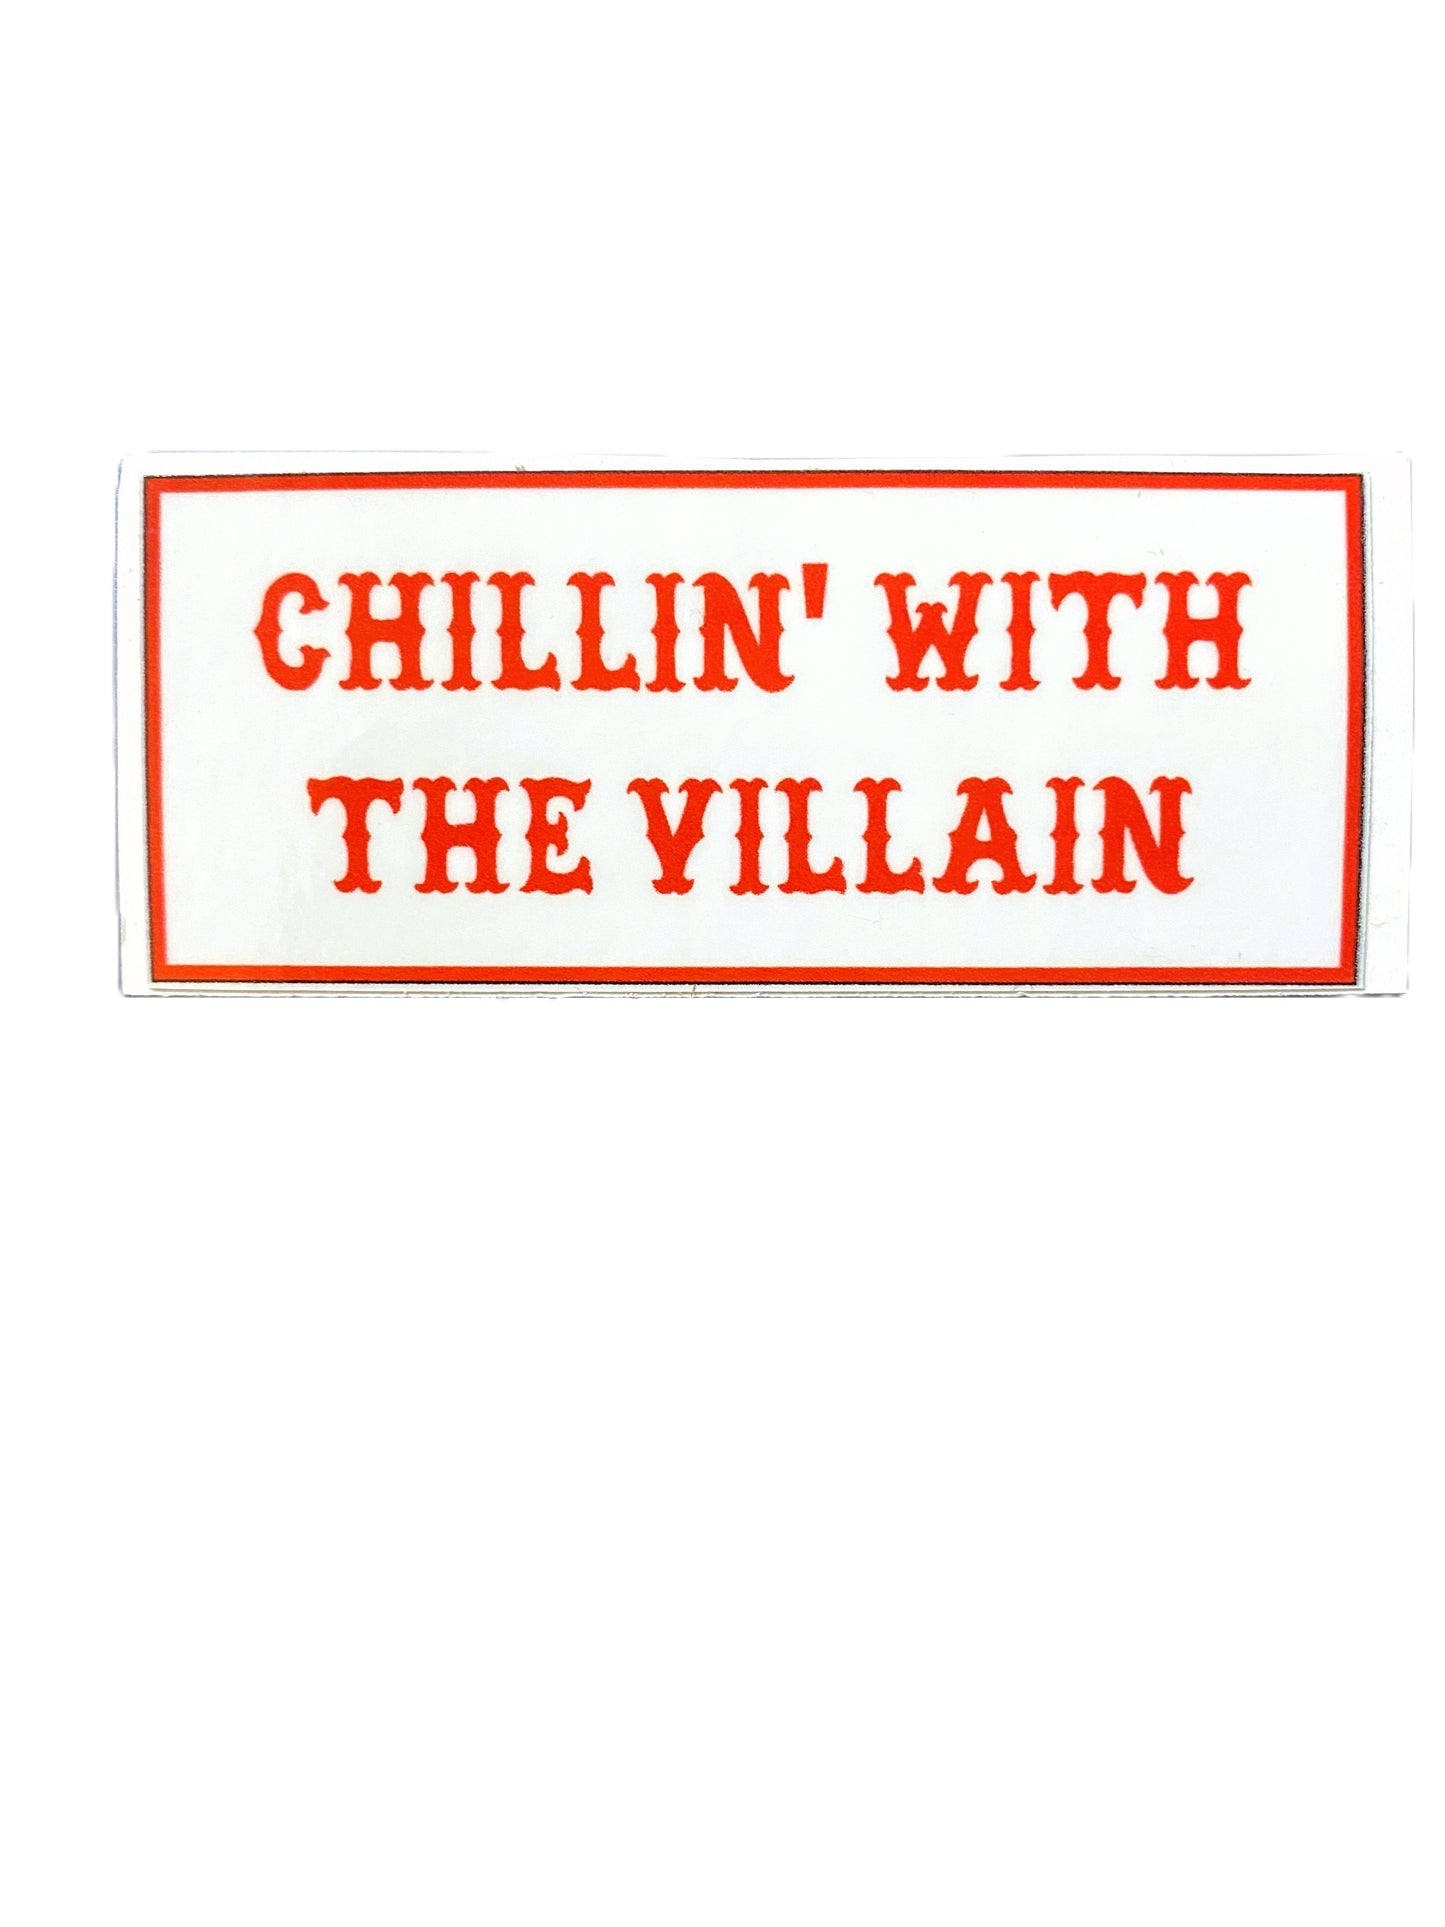 Chillin With The Villian sticker